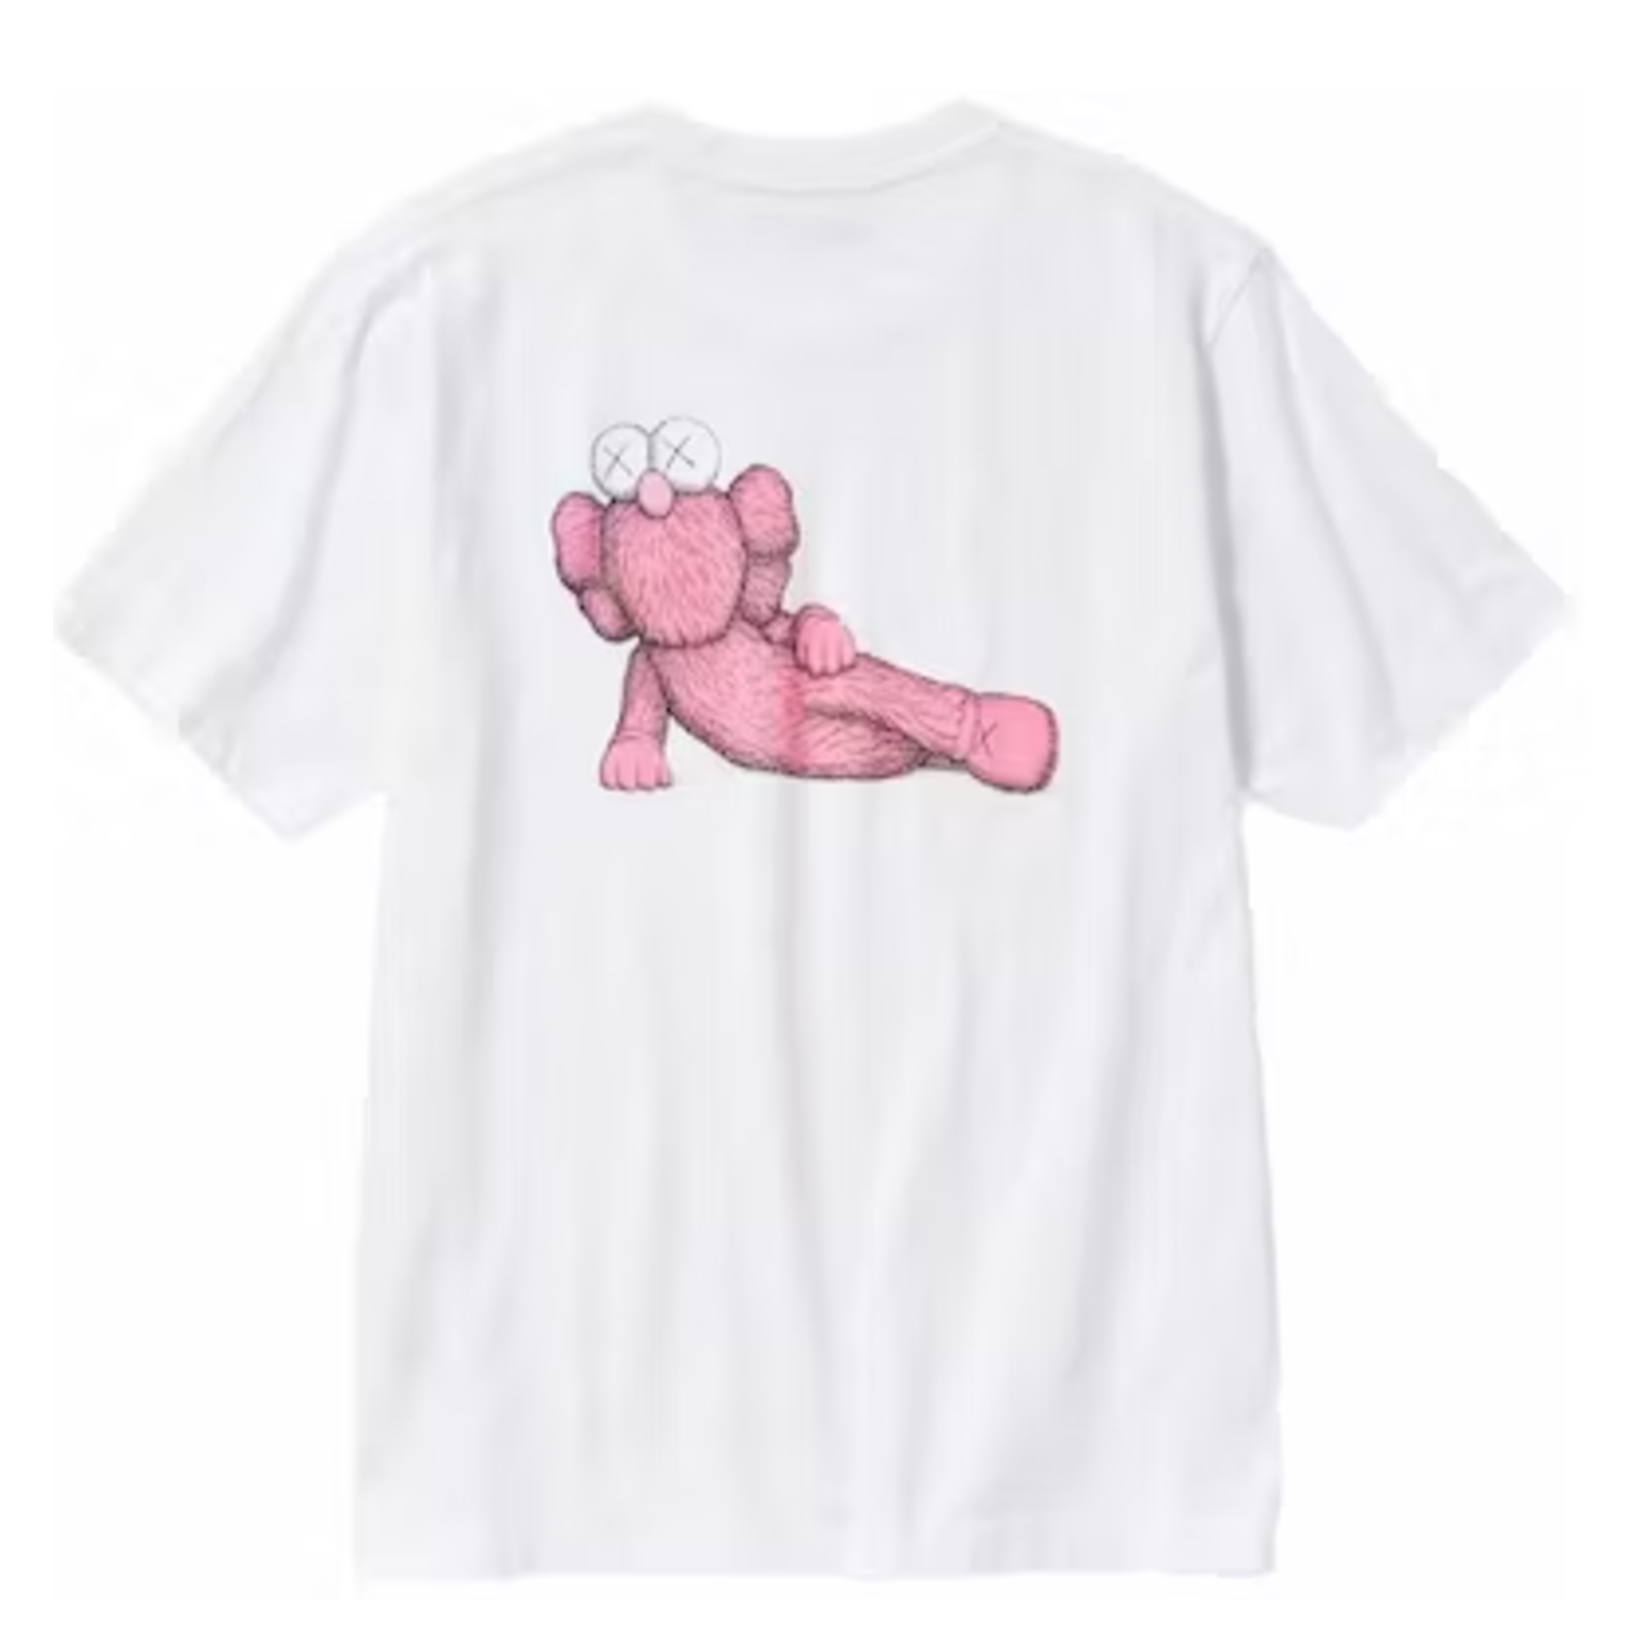 KAWS KAWS X Uniqlo UT Short Sleeve Graphic T-Shirt (US Sizing) White Size Large, DS BRAND NEW